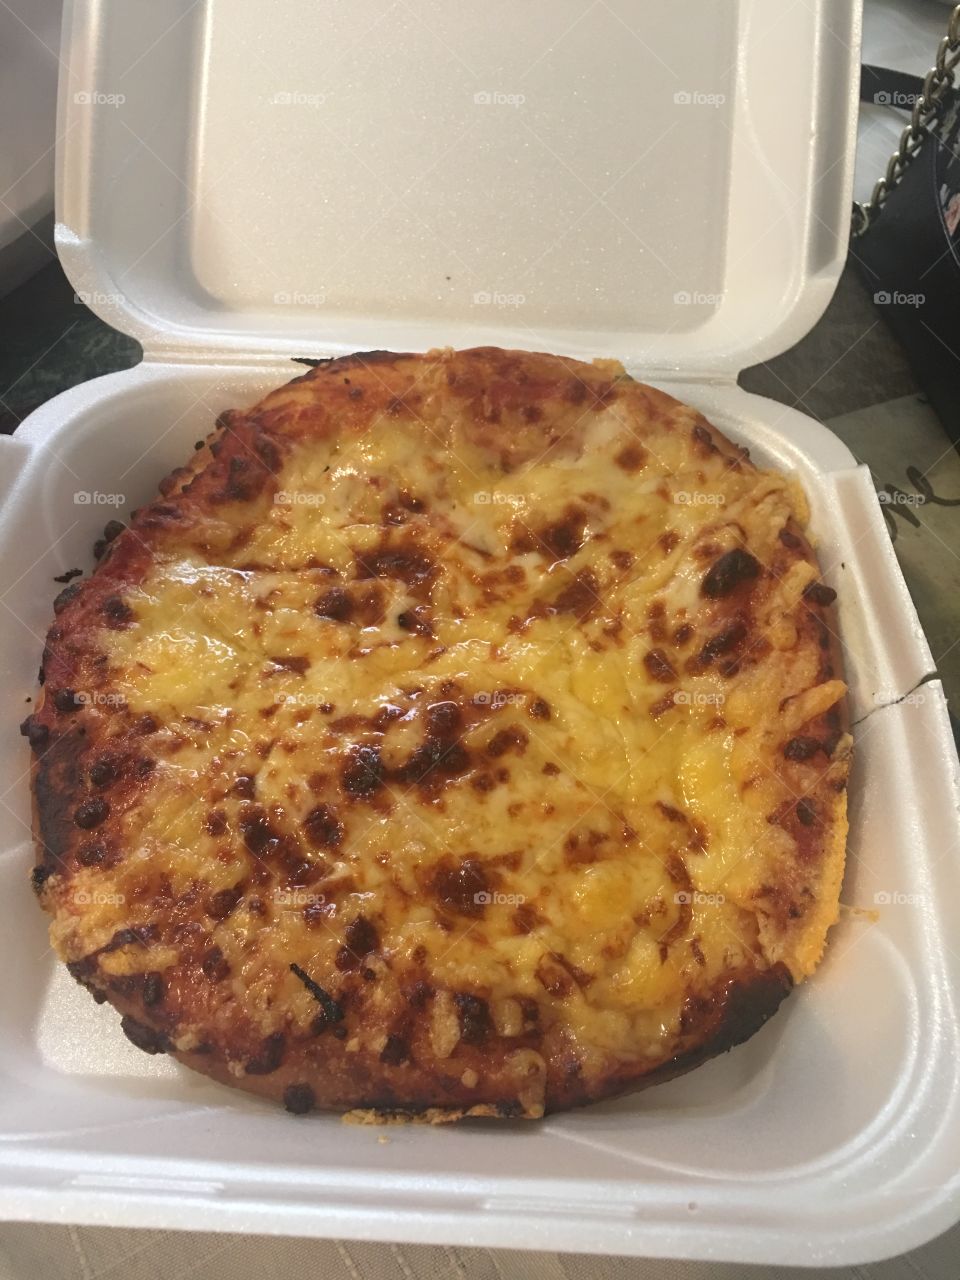 Cuban pizza